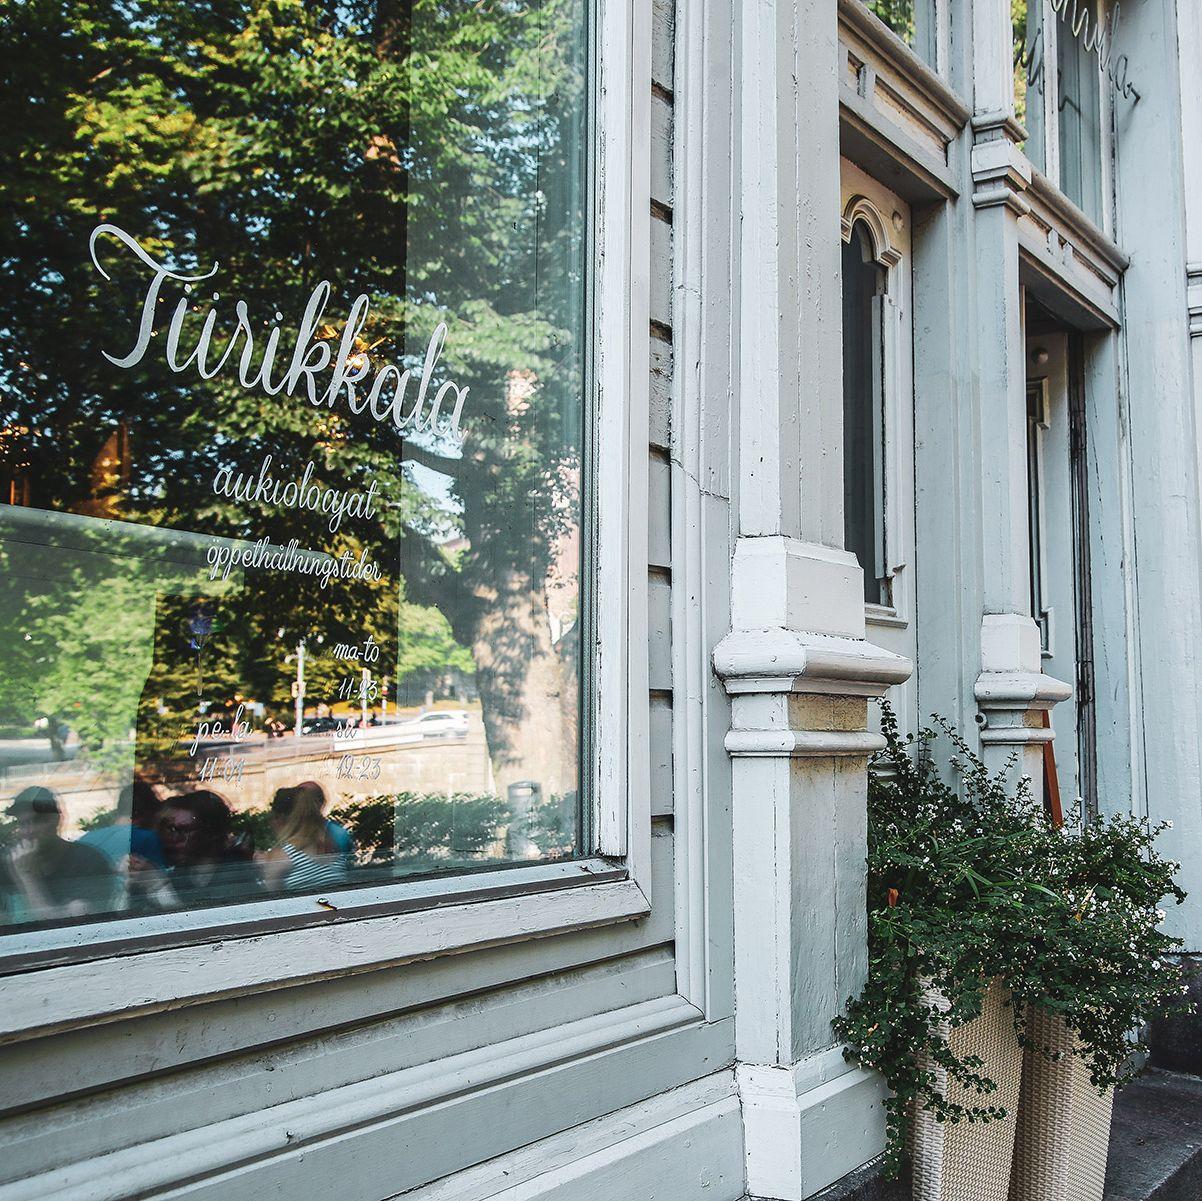 Tiirikkalas vita exteriör, med ett fönster med namnet på restaurangen i elegant manus.